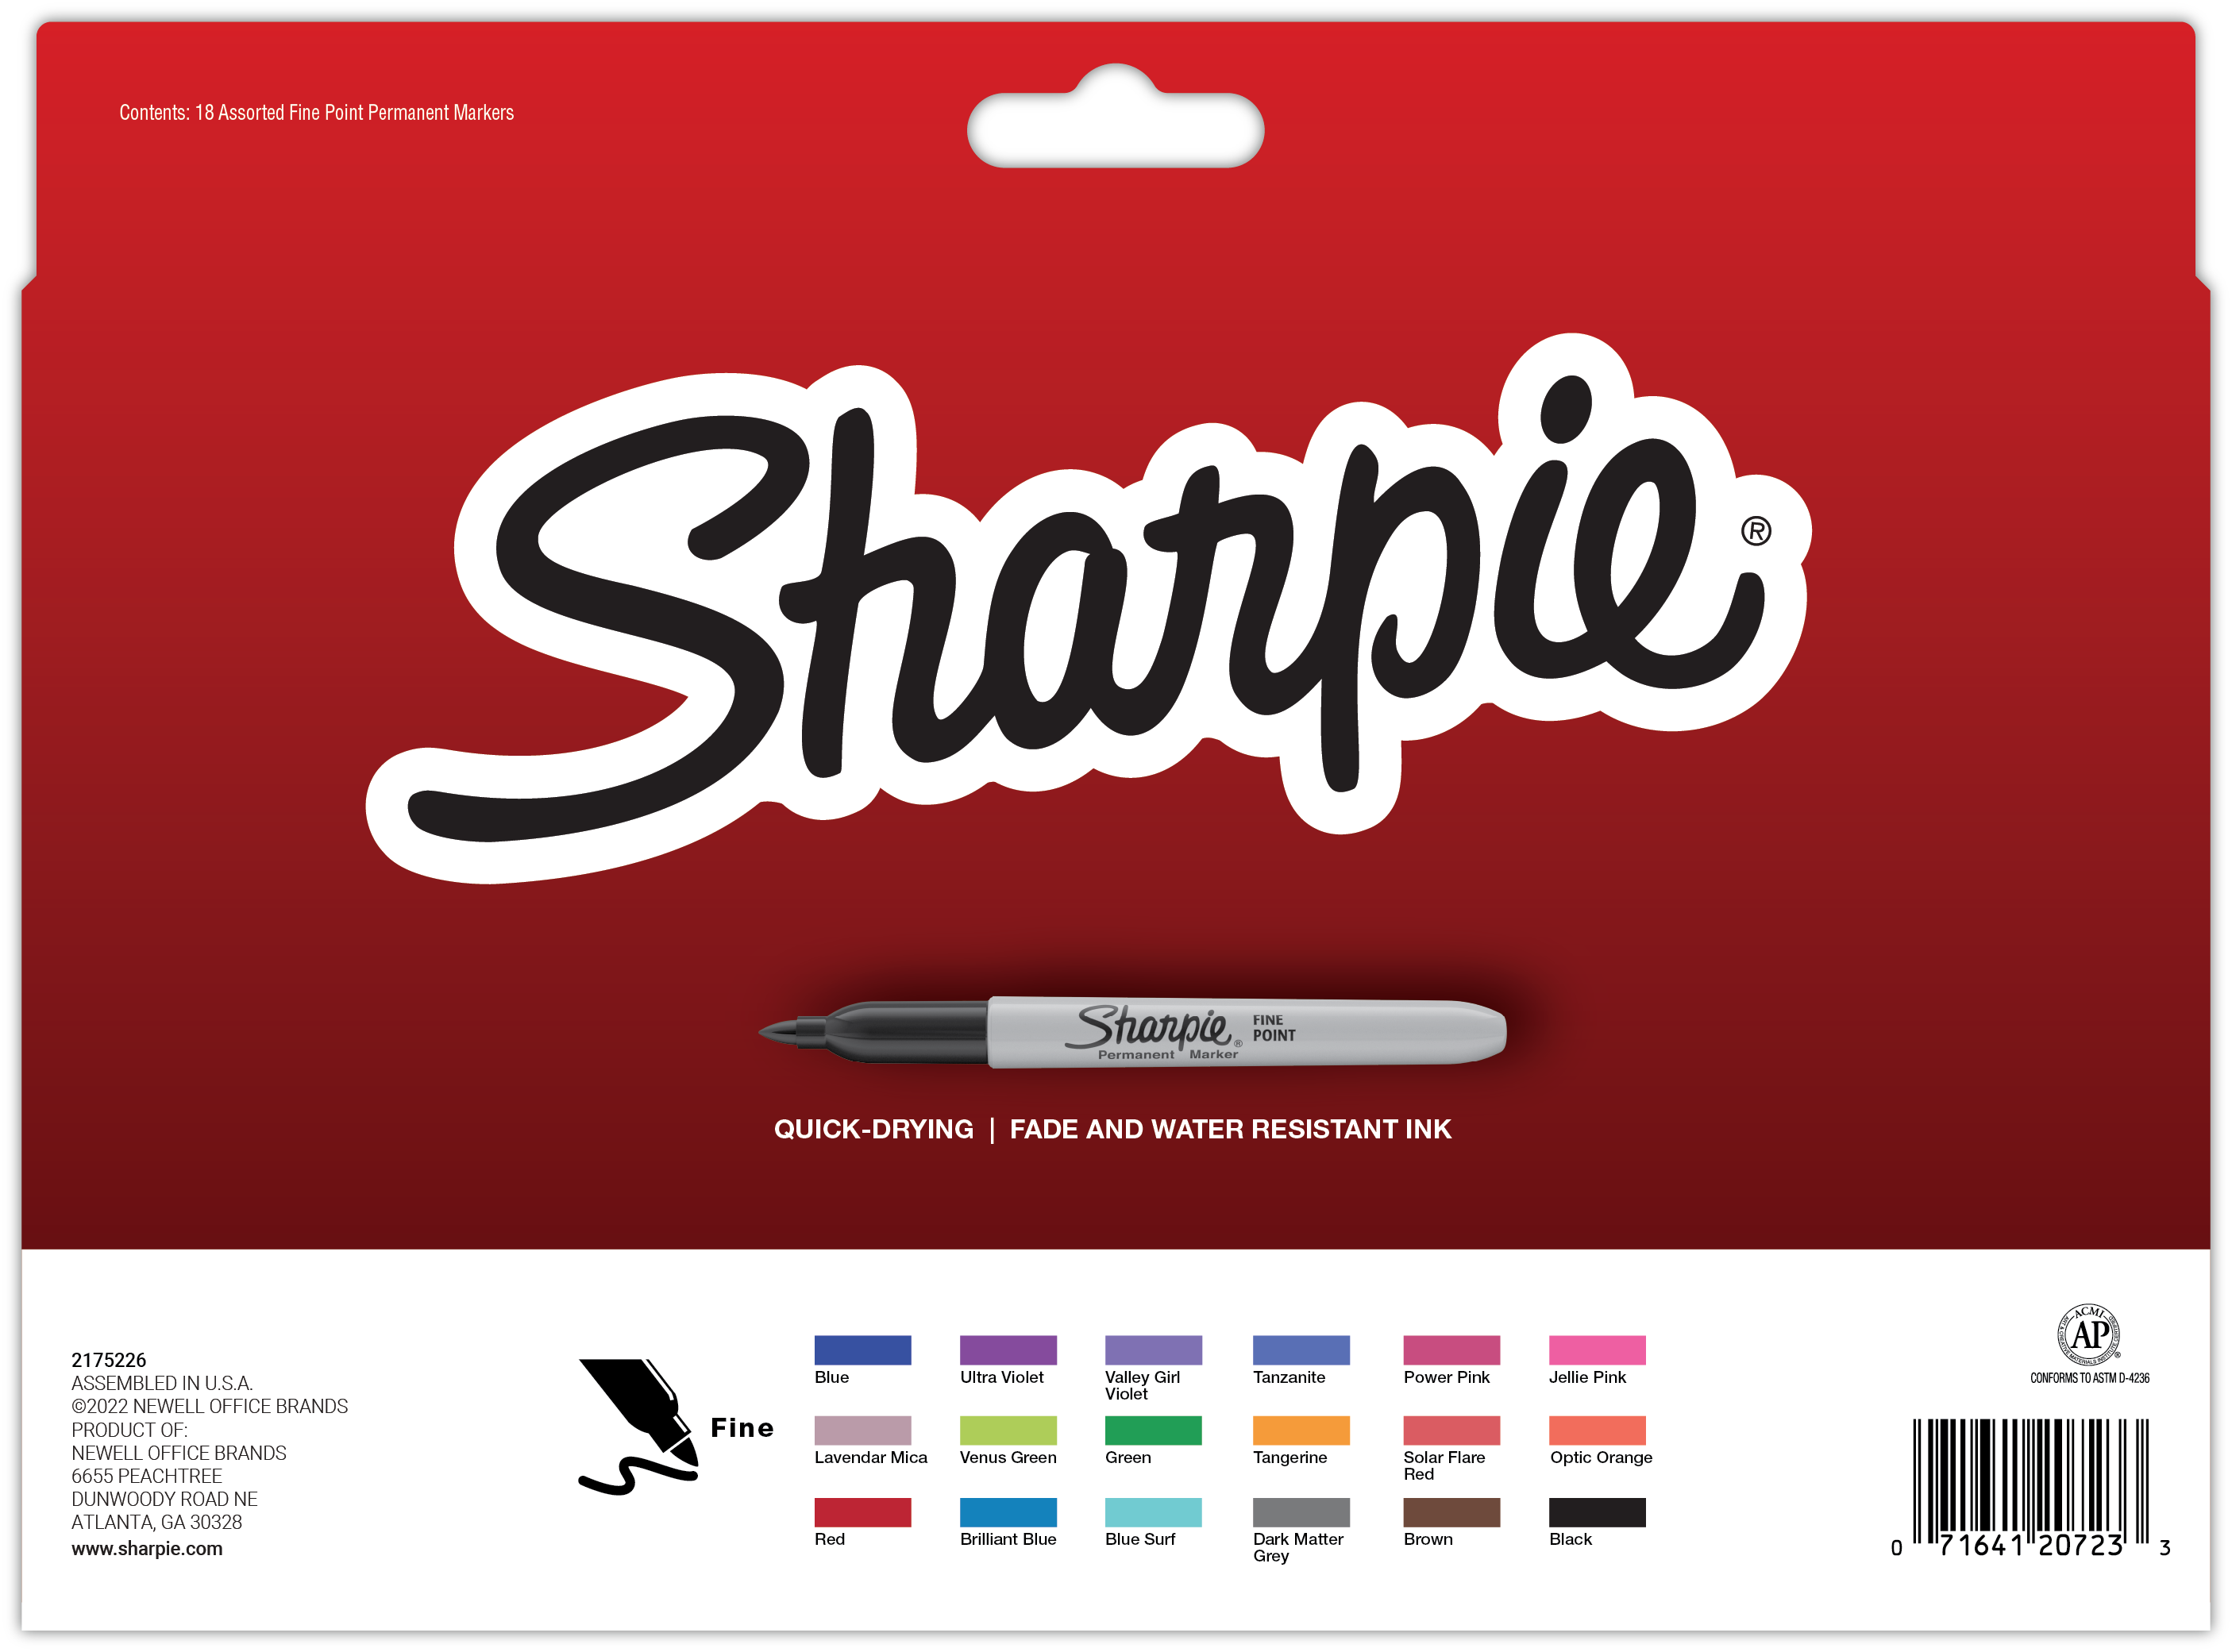 Sharpie Permanent Marker, Ultra Fine Tip, Black, Dozen (37001